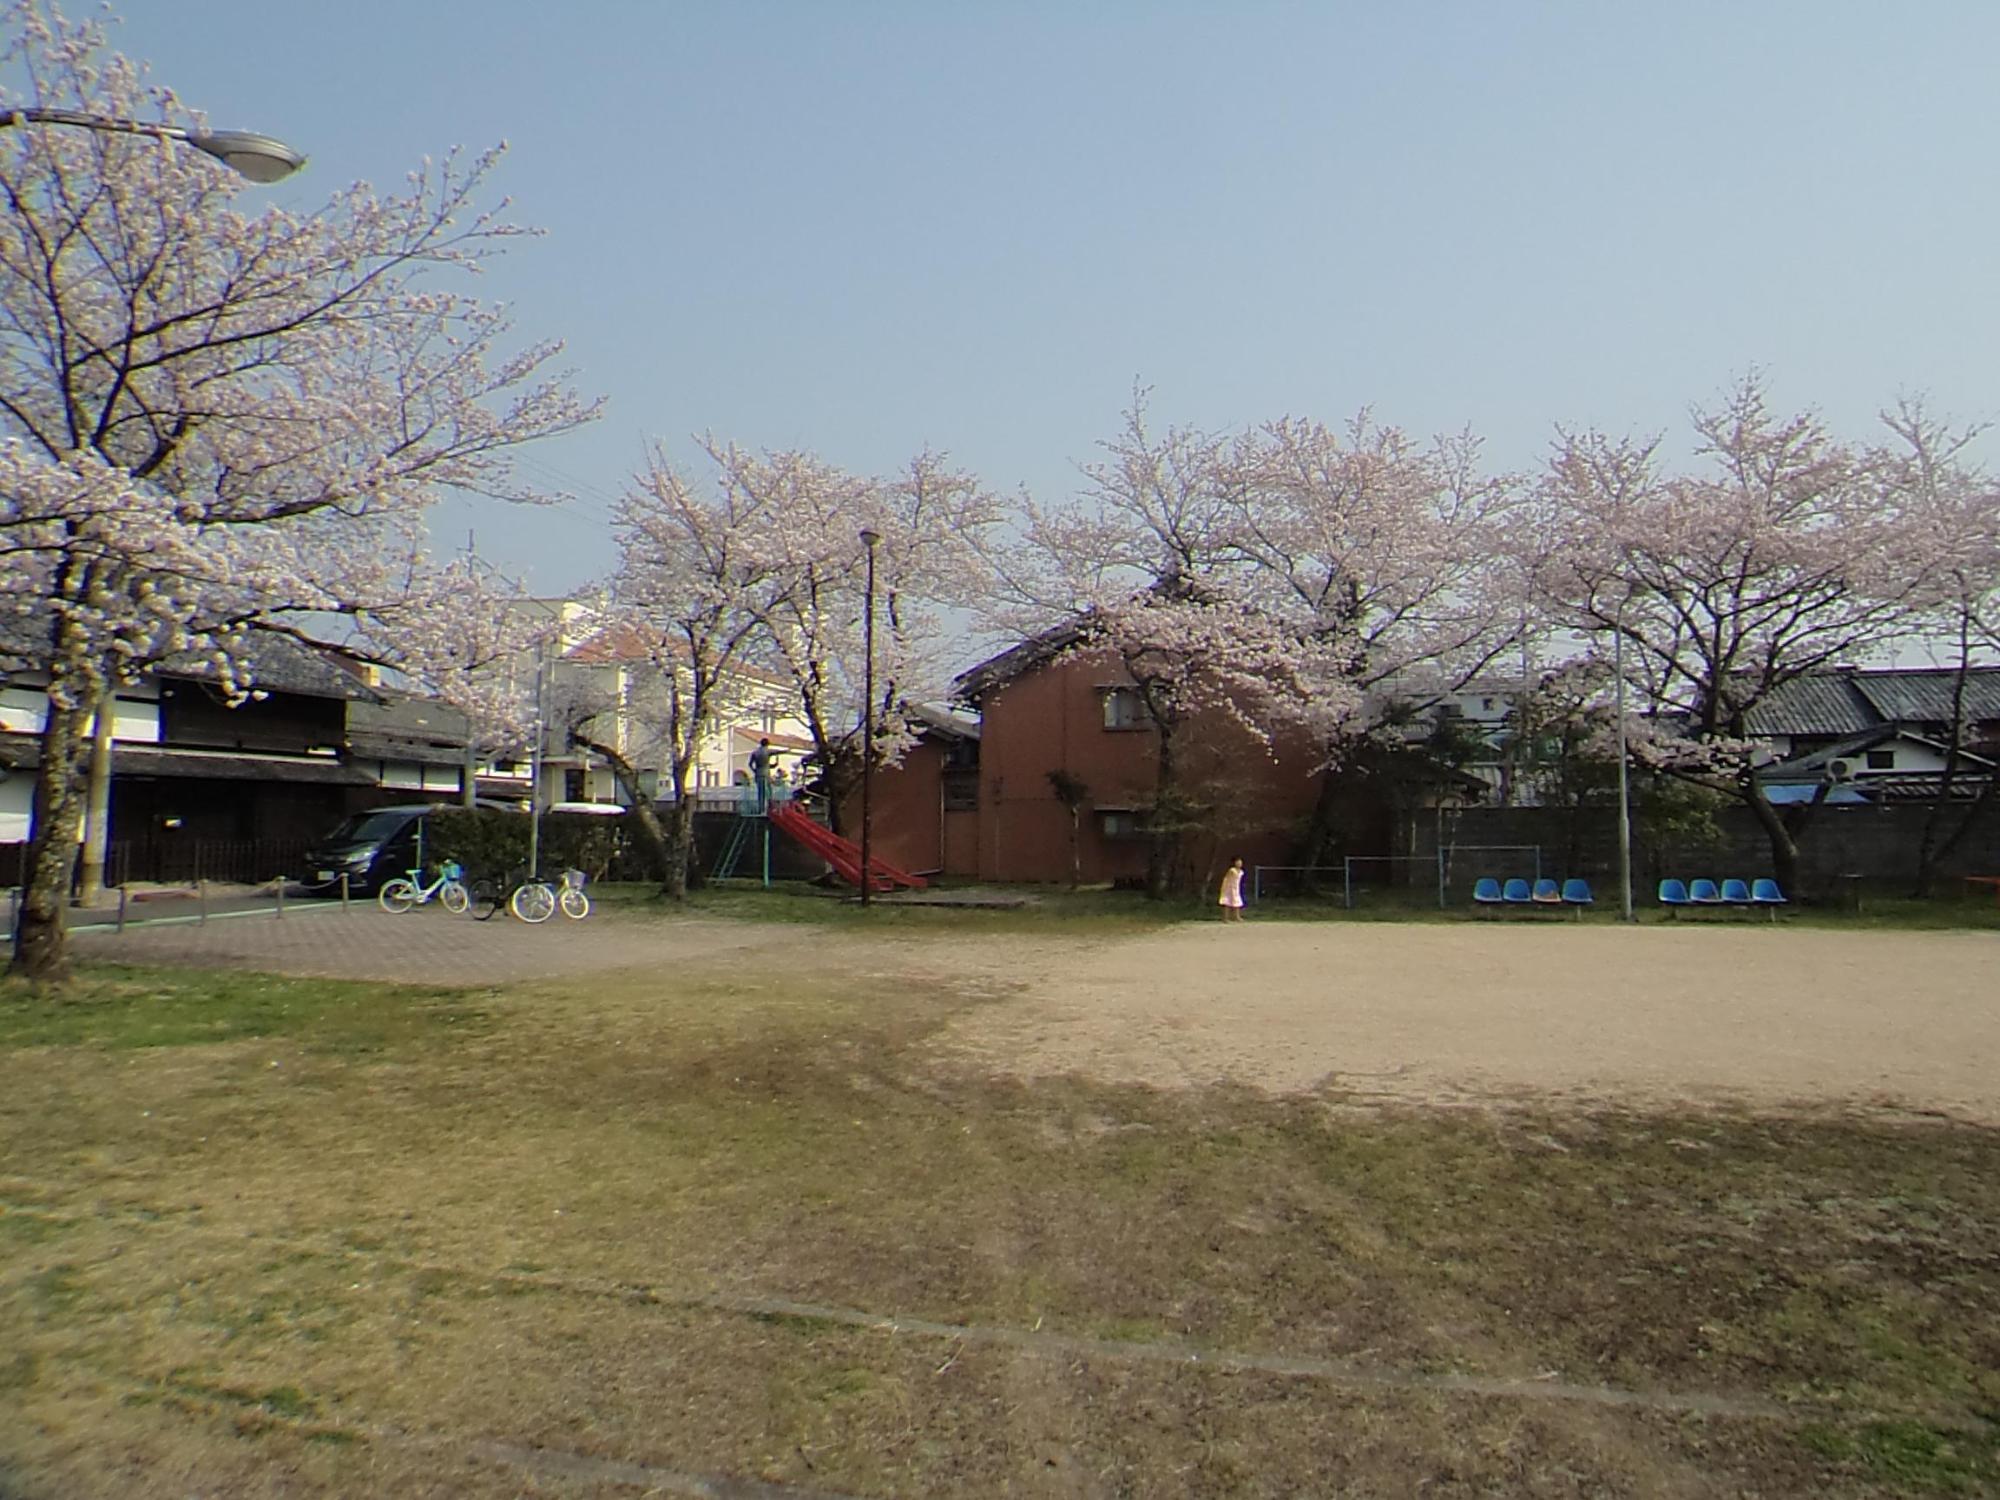 周りに満開の桜の木と木の下に青いベンチの置かれ、真ん中に広いグラウンドの為心町公園の写真